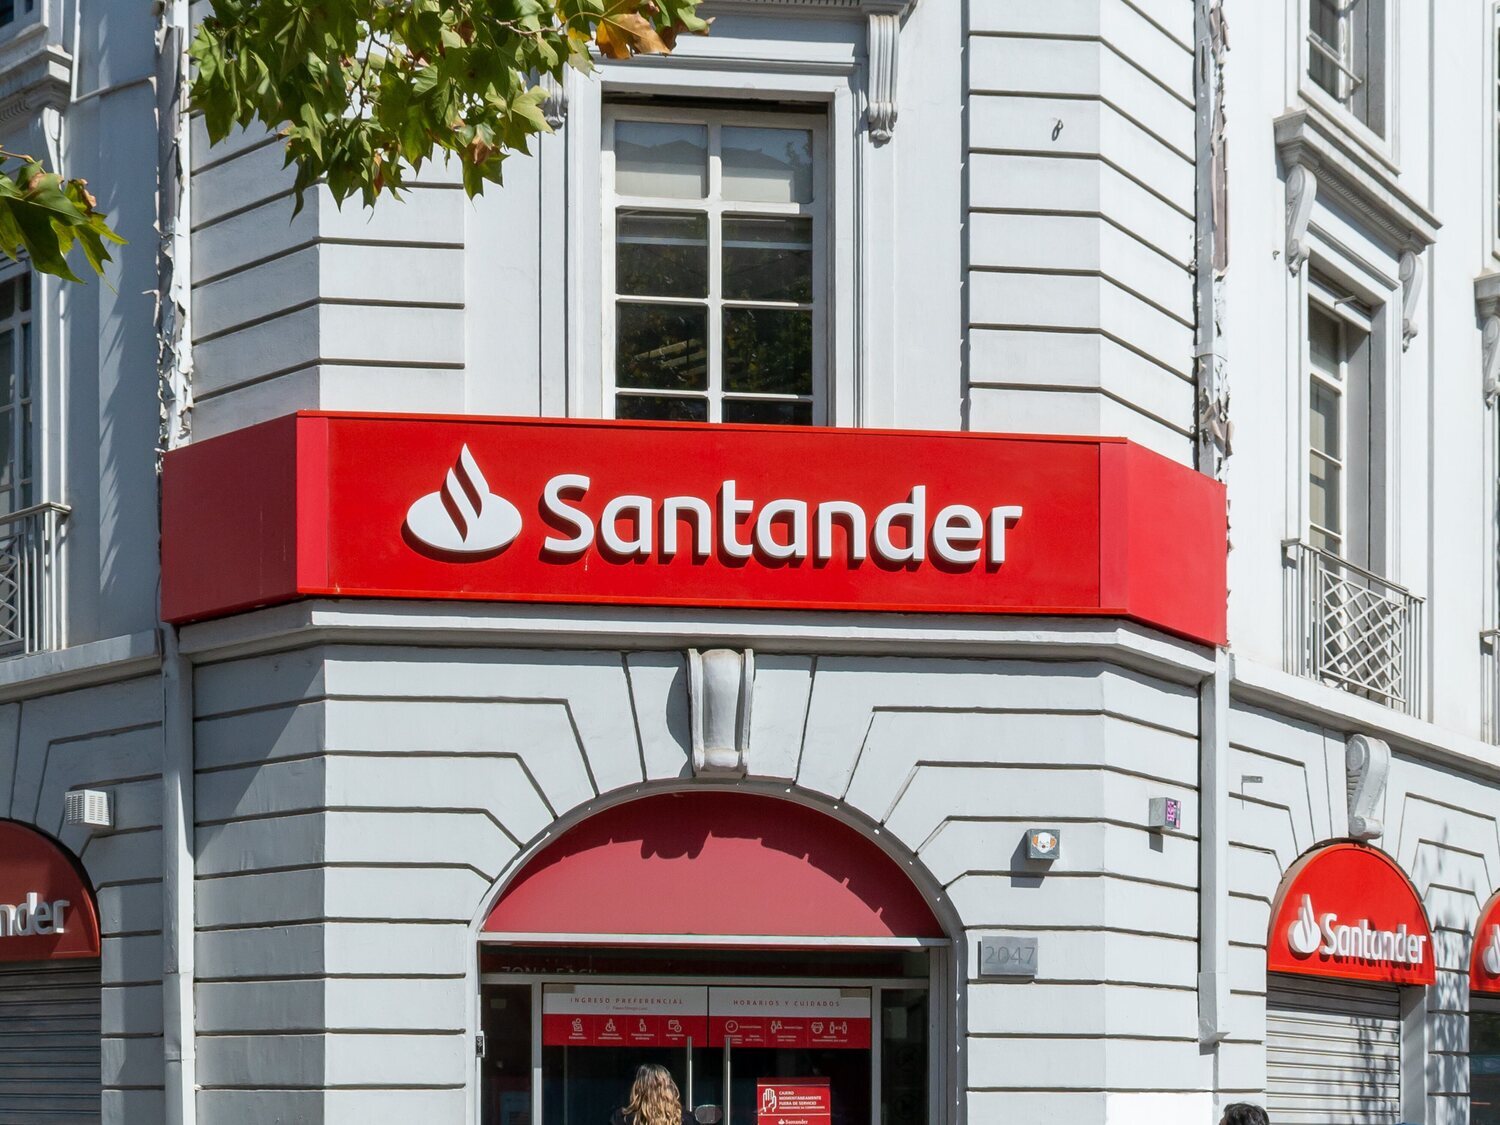 El Banco Santander alerta de un "acceso no autorizado" a los datos de sus clientes en España